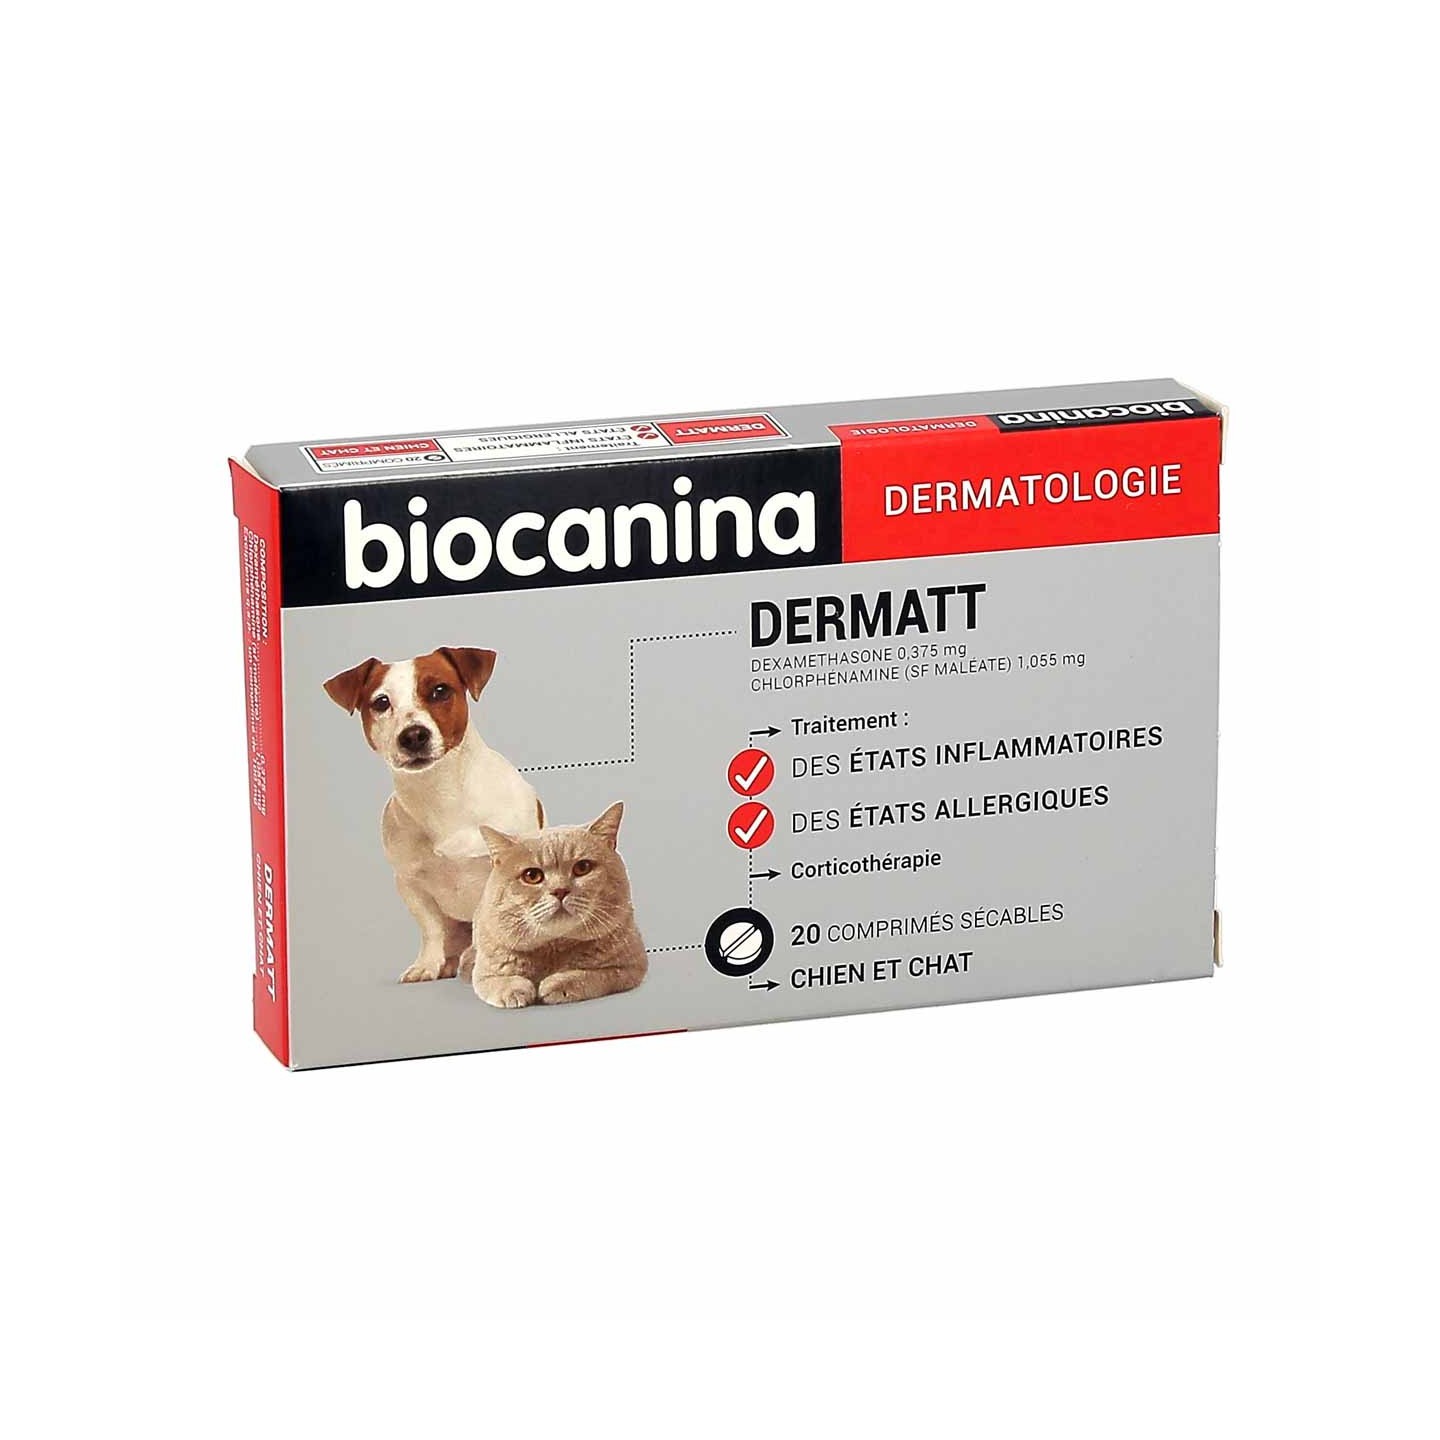 Dermatt de Biocanina - Corticothérapie chien et chat - 20 comprimés